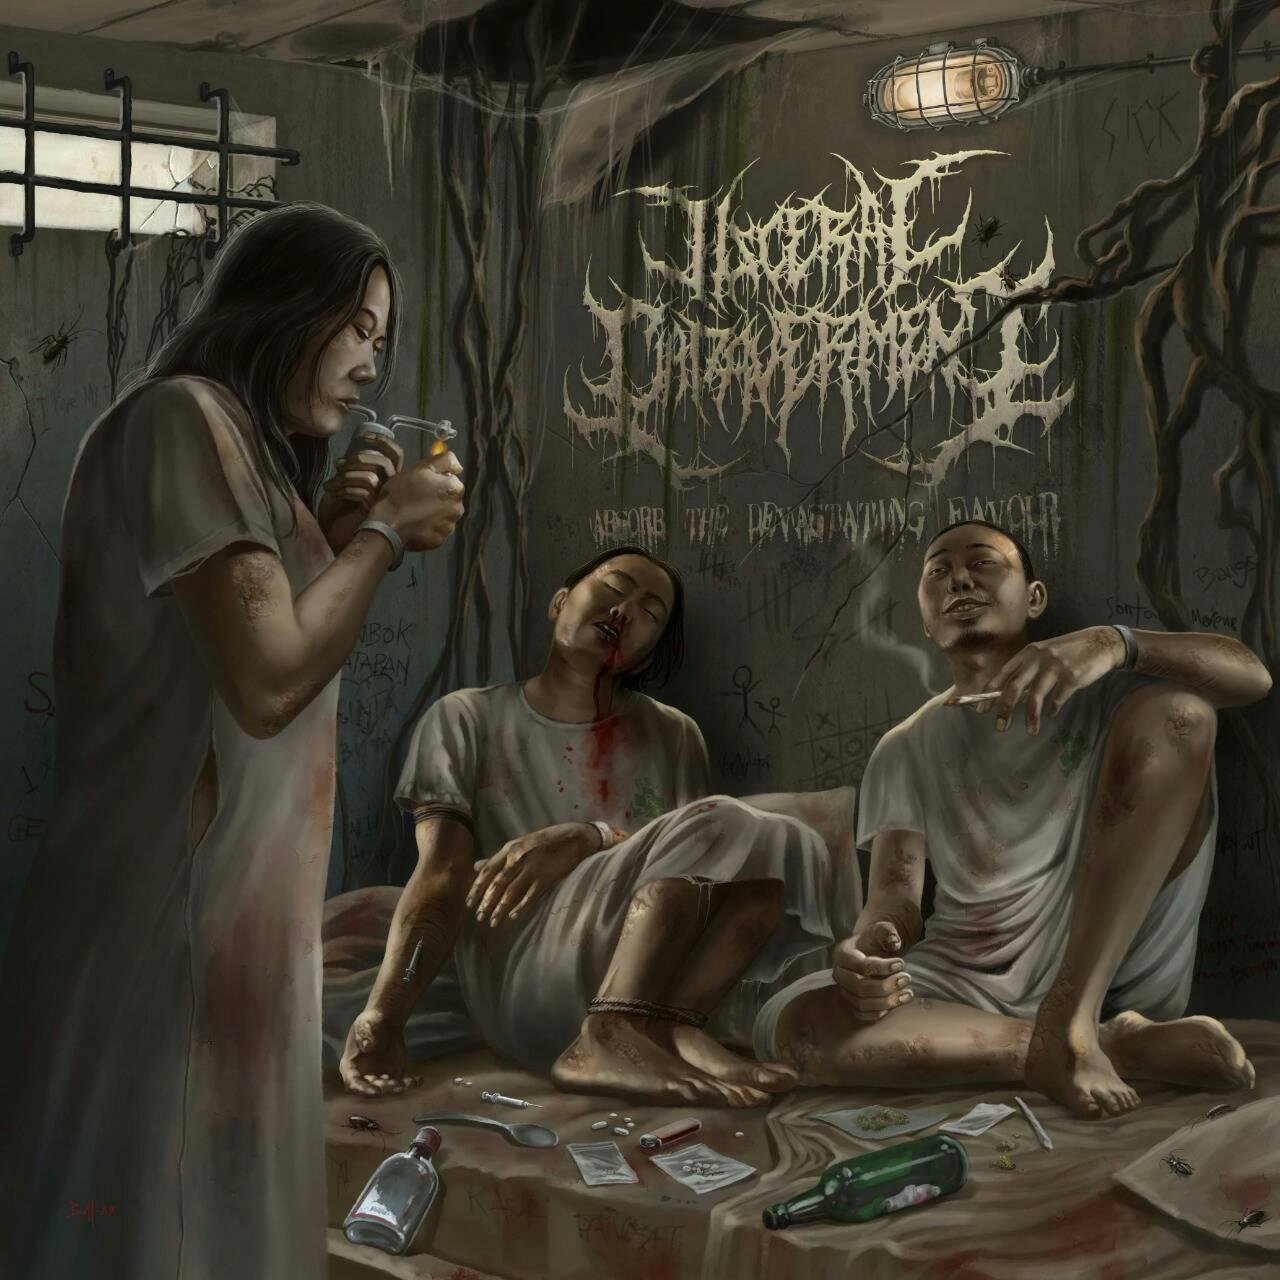 Visceral Cadaverment - Absorb the Devastating Favour (2022) FLAC Download